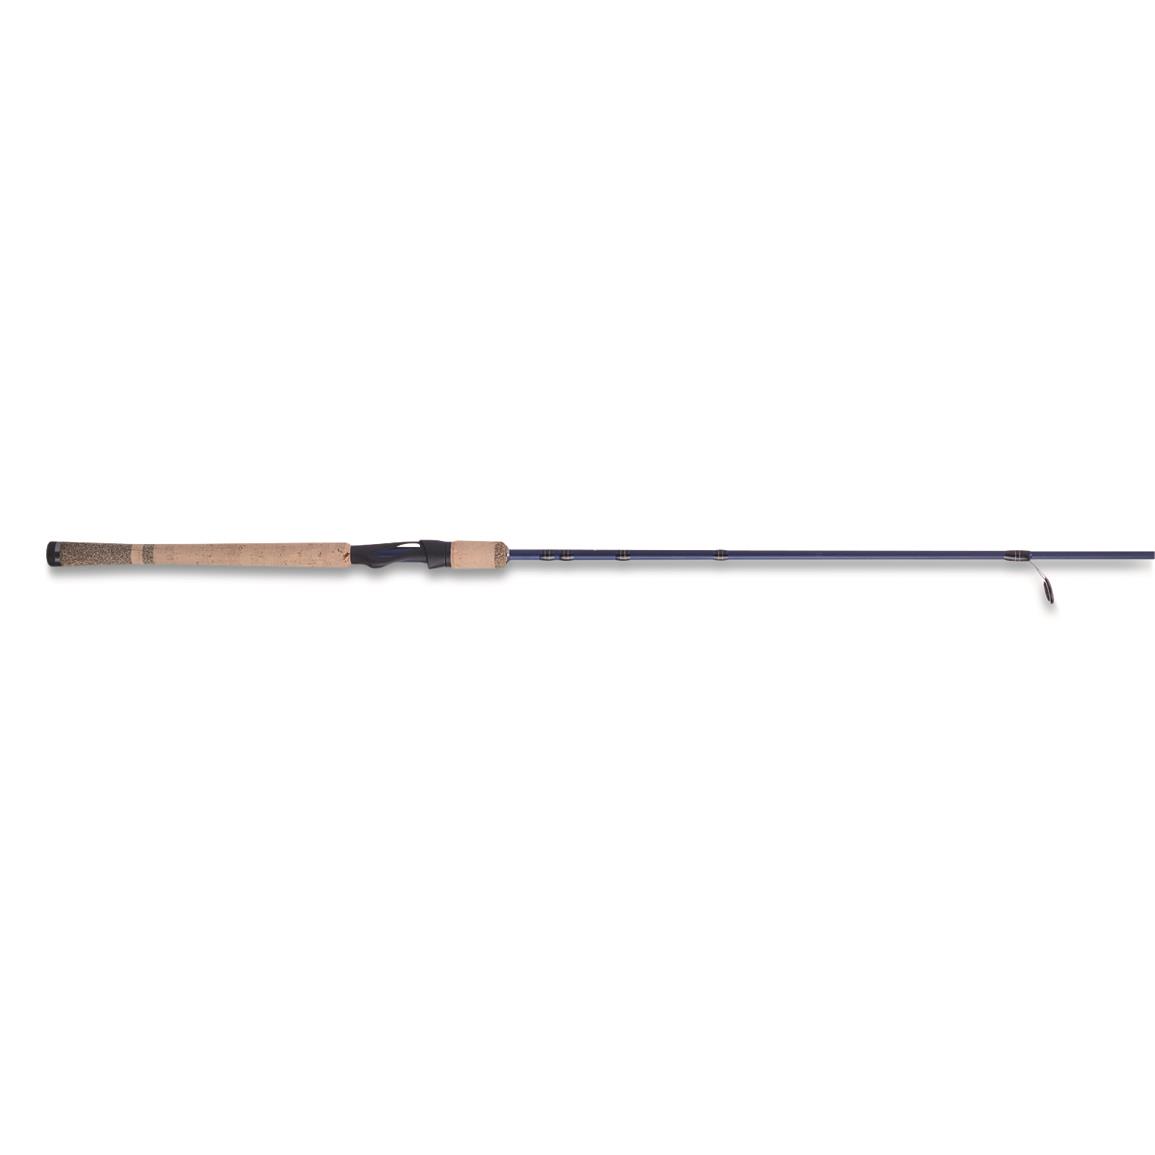 Fenwick Eagle Series Salmon/Steelhead Spinning Rod